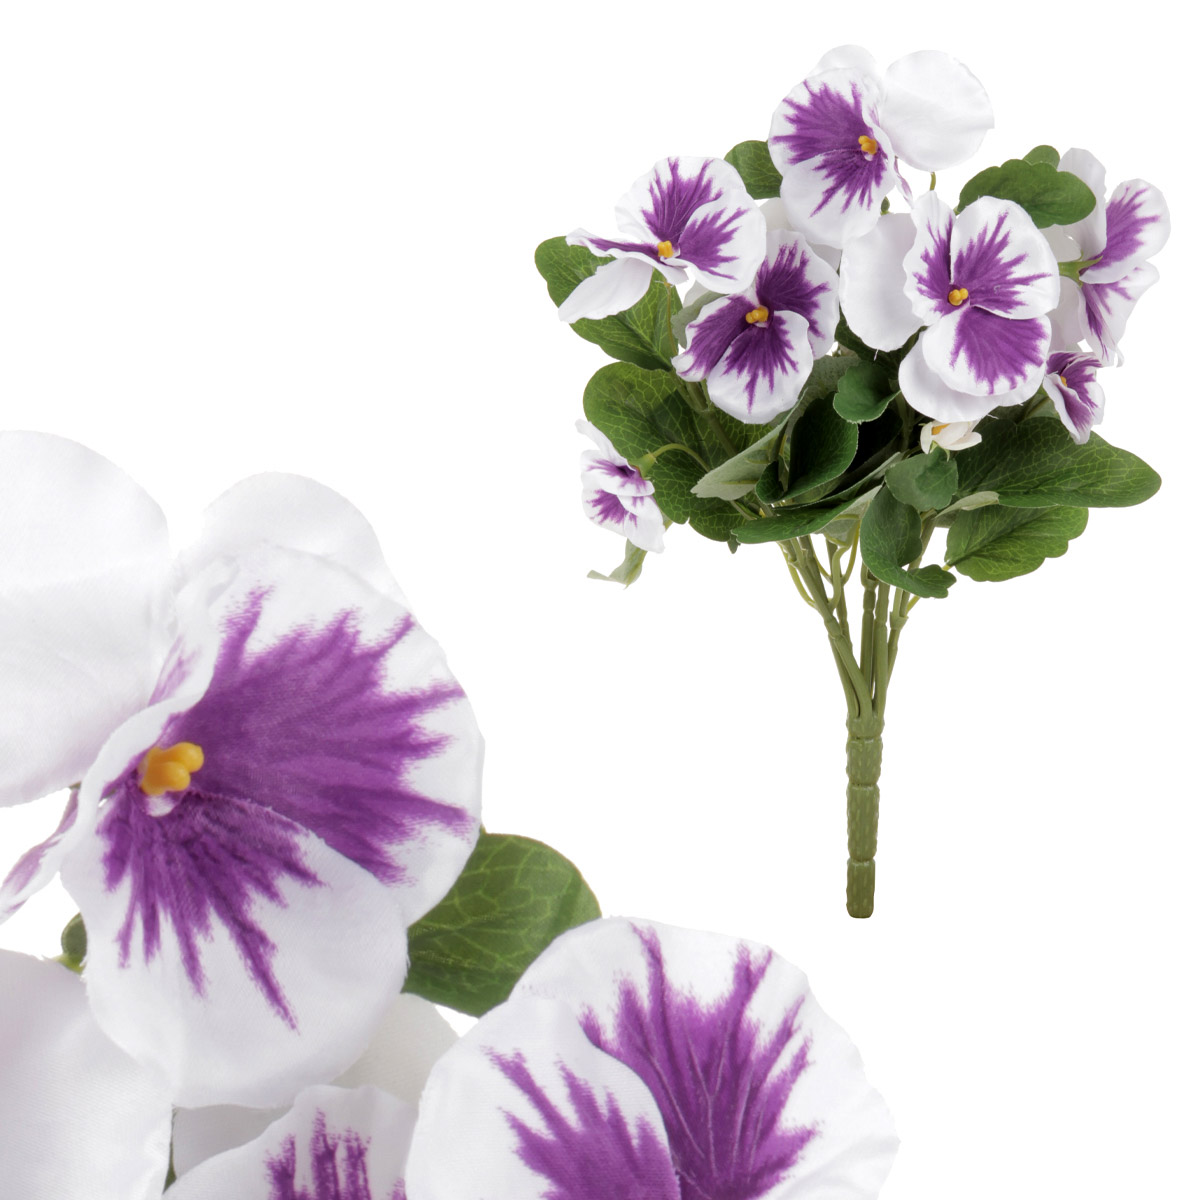 Maceška - kytice z umělých květin, barva fialovo - bílá.